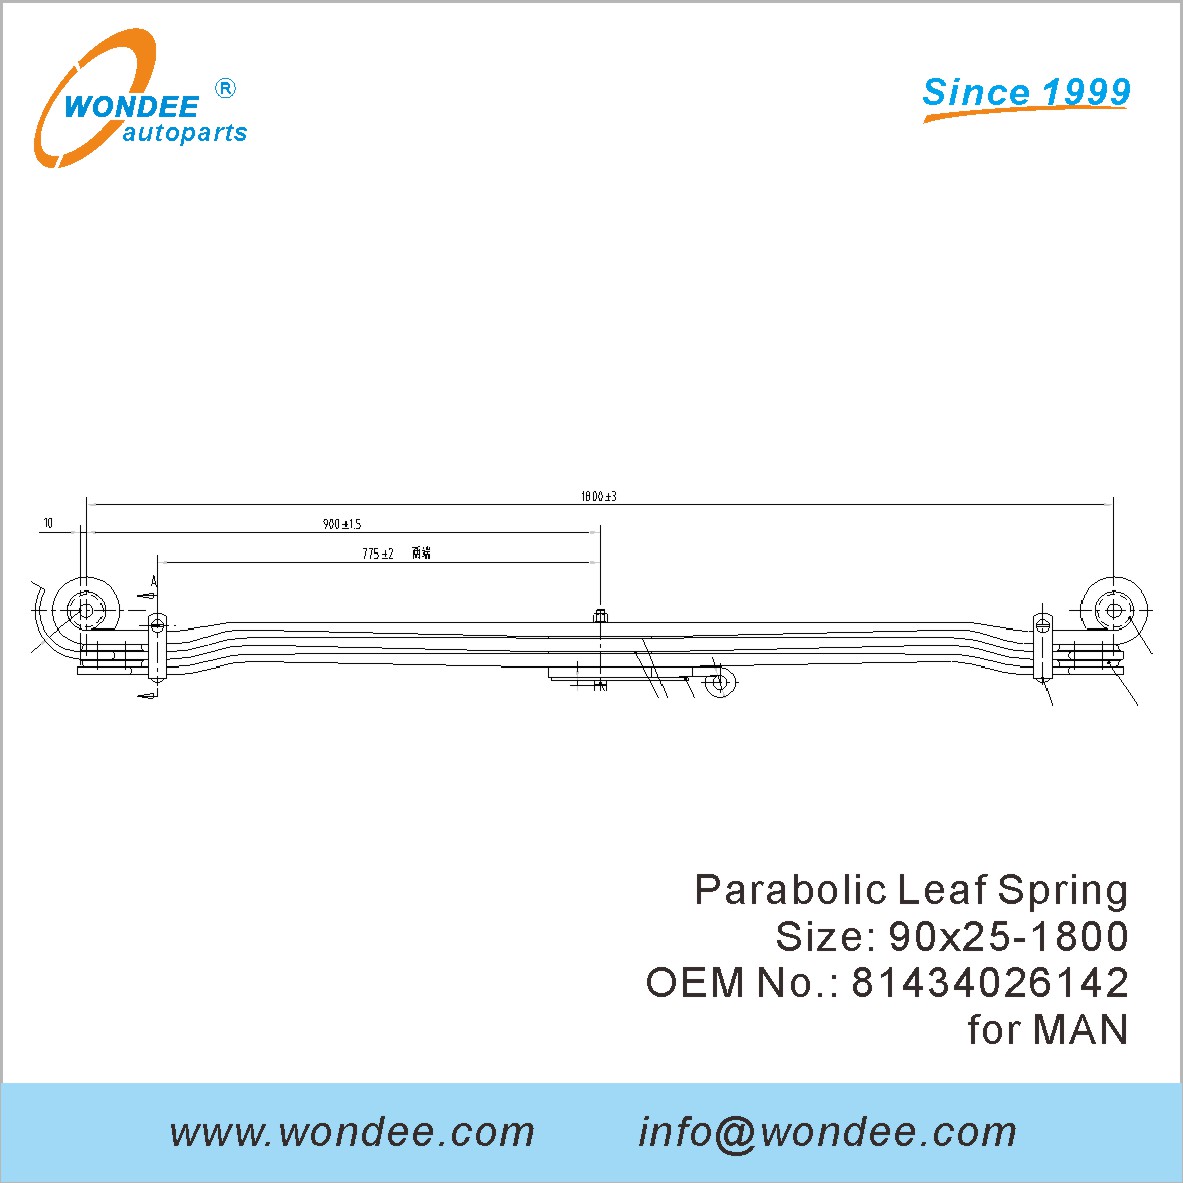 WONDEE heavy duty parabolic Leaf Spring OEM 81434026142 for MAN